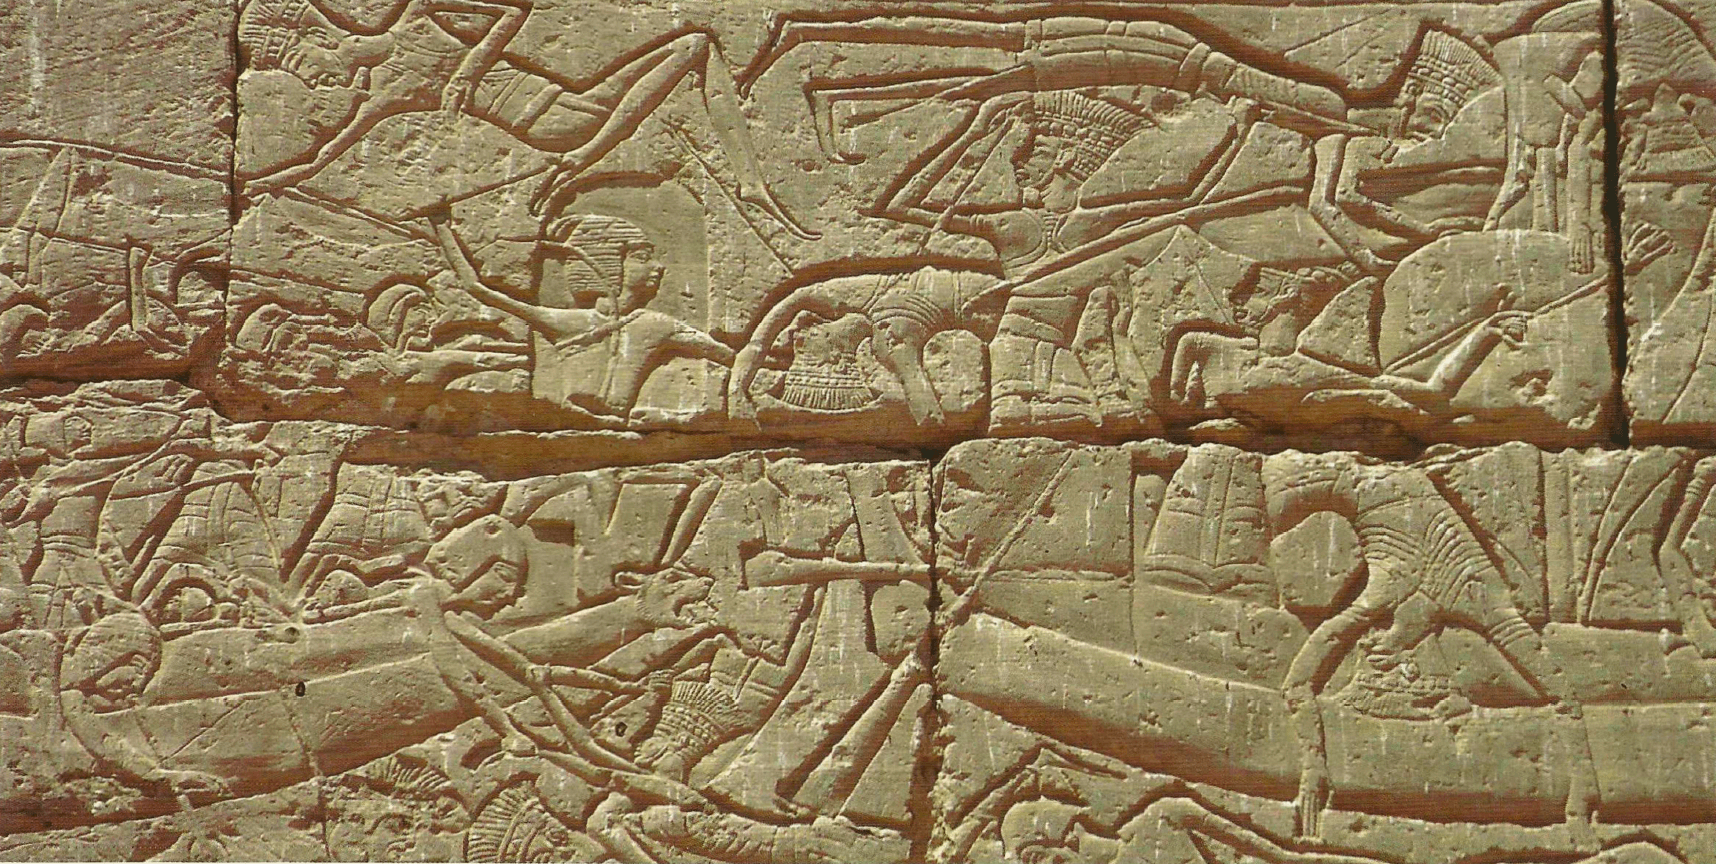 batalha naval entre Ramsés Ill e os Povos do Mar (1180 a.C.). Relevo do templo de Amon em Medinet Habu, Egito. Os guerreiros filisteus são representados usando seus ornamentos característicos a cabeça.